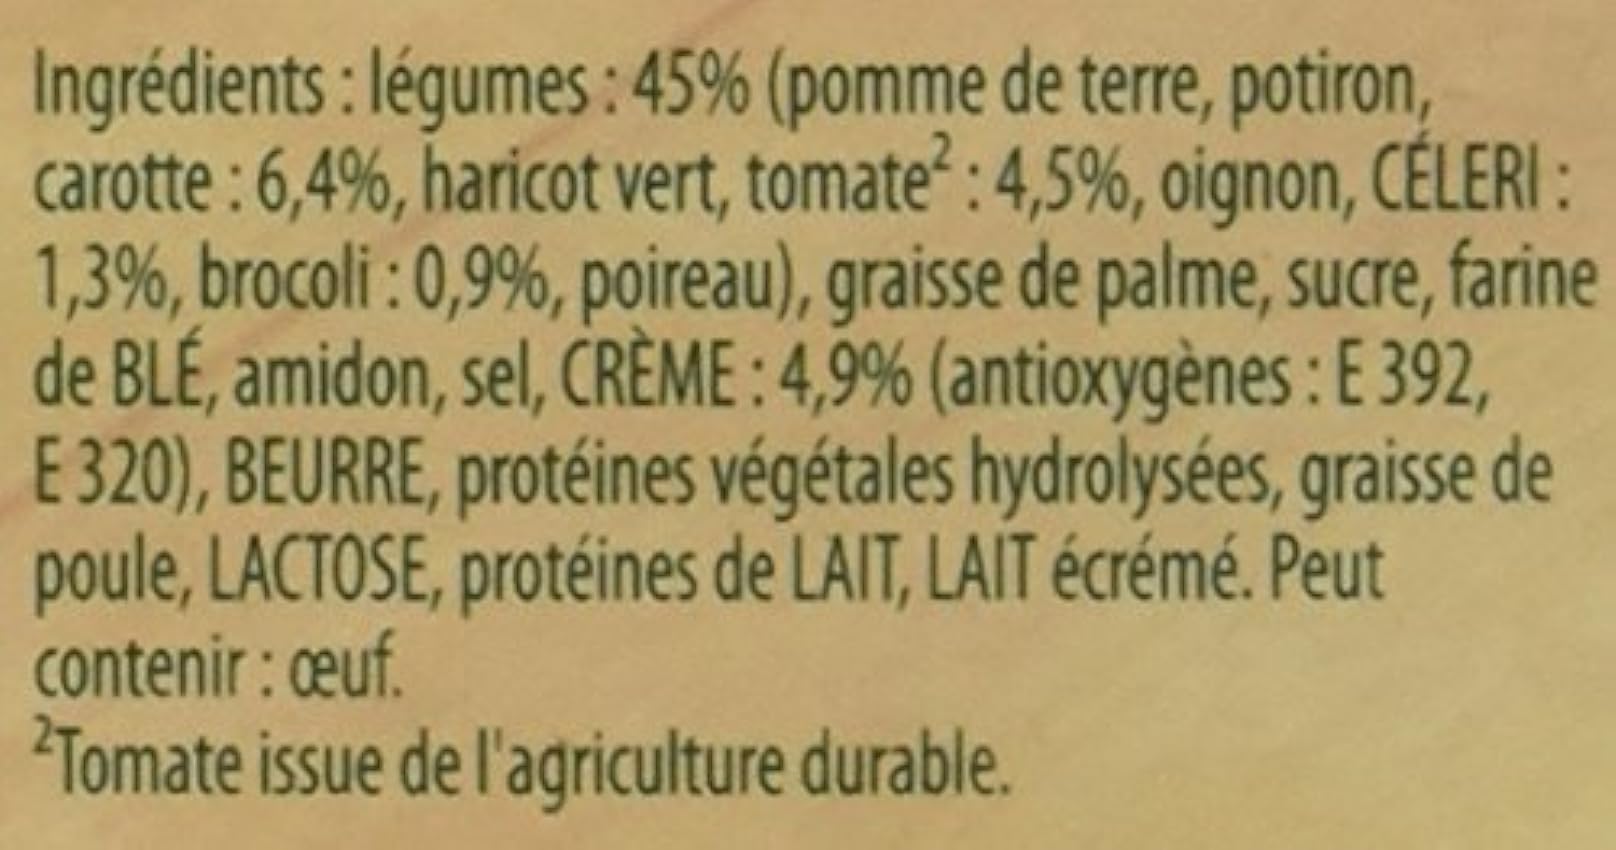 Knorr Douceur de 9 Légumes avec une Touche de Crème pour 3 portions 84 g - Lot de 5 mcGeWuu0